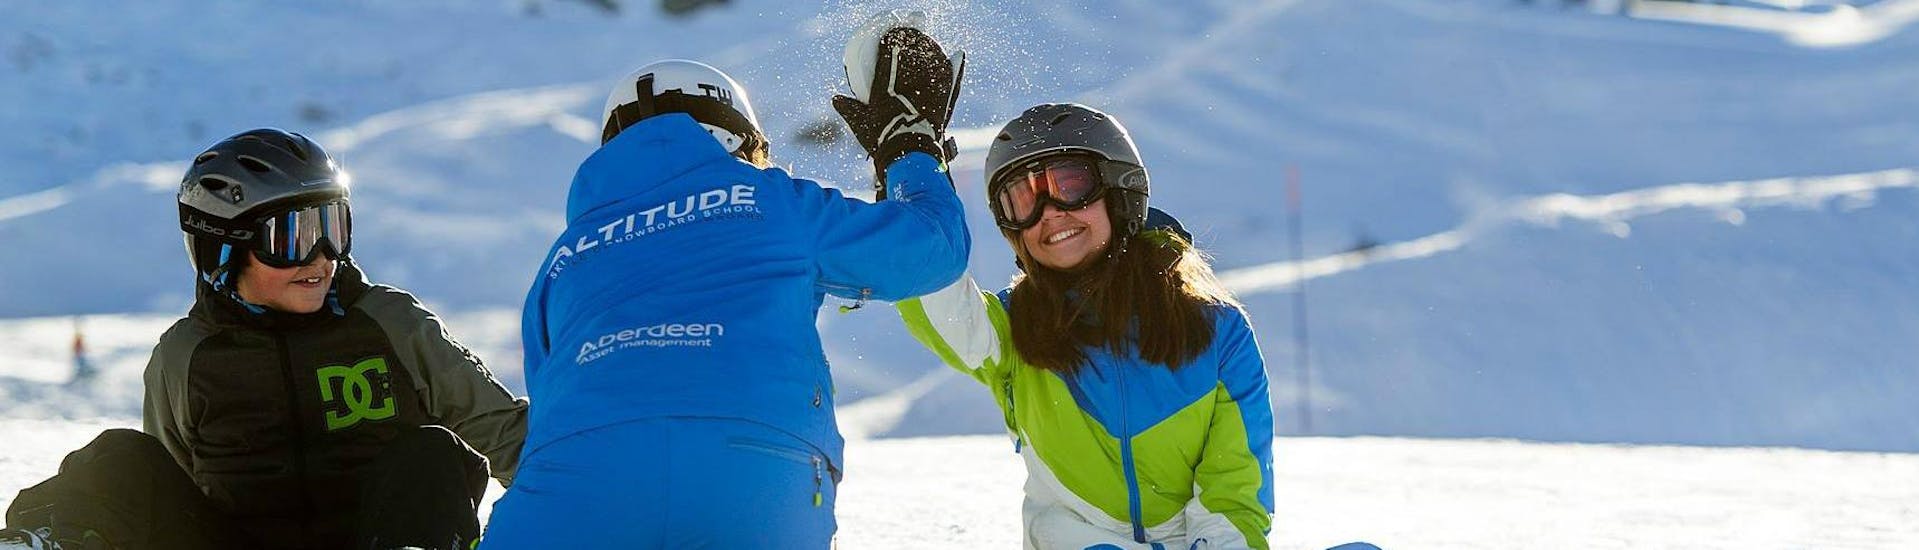 Im Angebot "Privater Snowboardkurs für Kinder & Erwachsene - Alle Levels" der Skischule Altitude Ski School Zermatt klatscht die Snowboardlehrerin mit ihrer Schülerin ab.